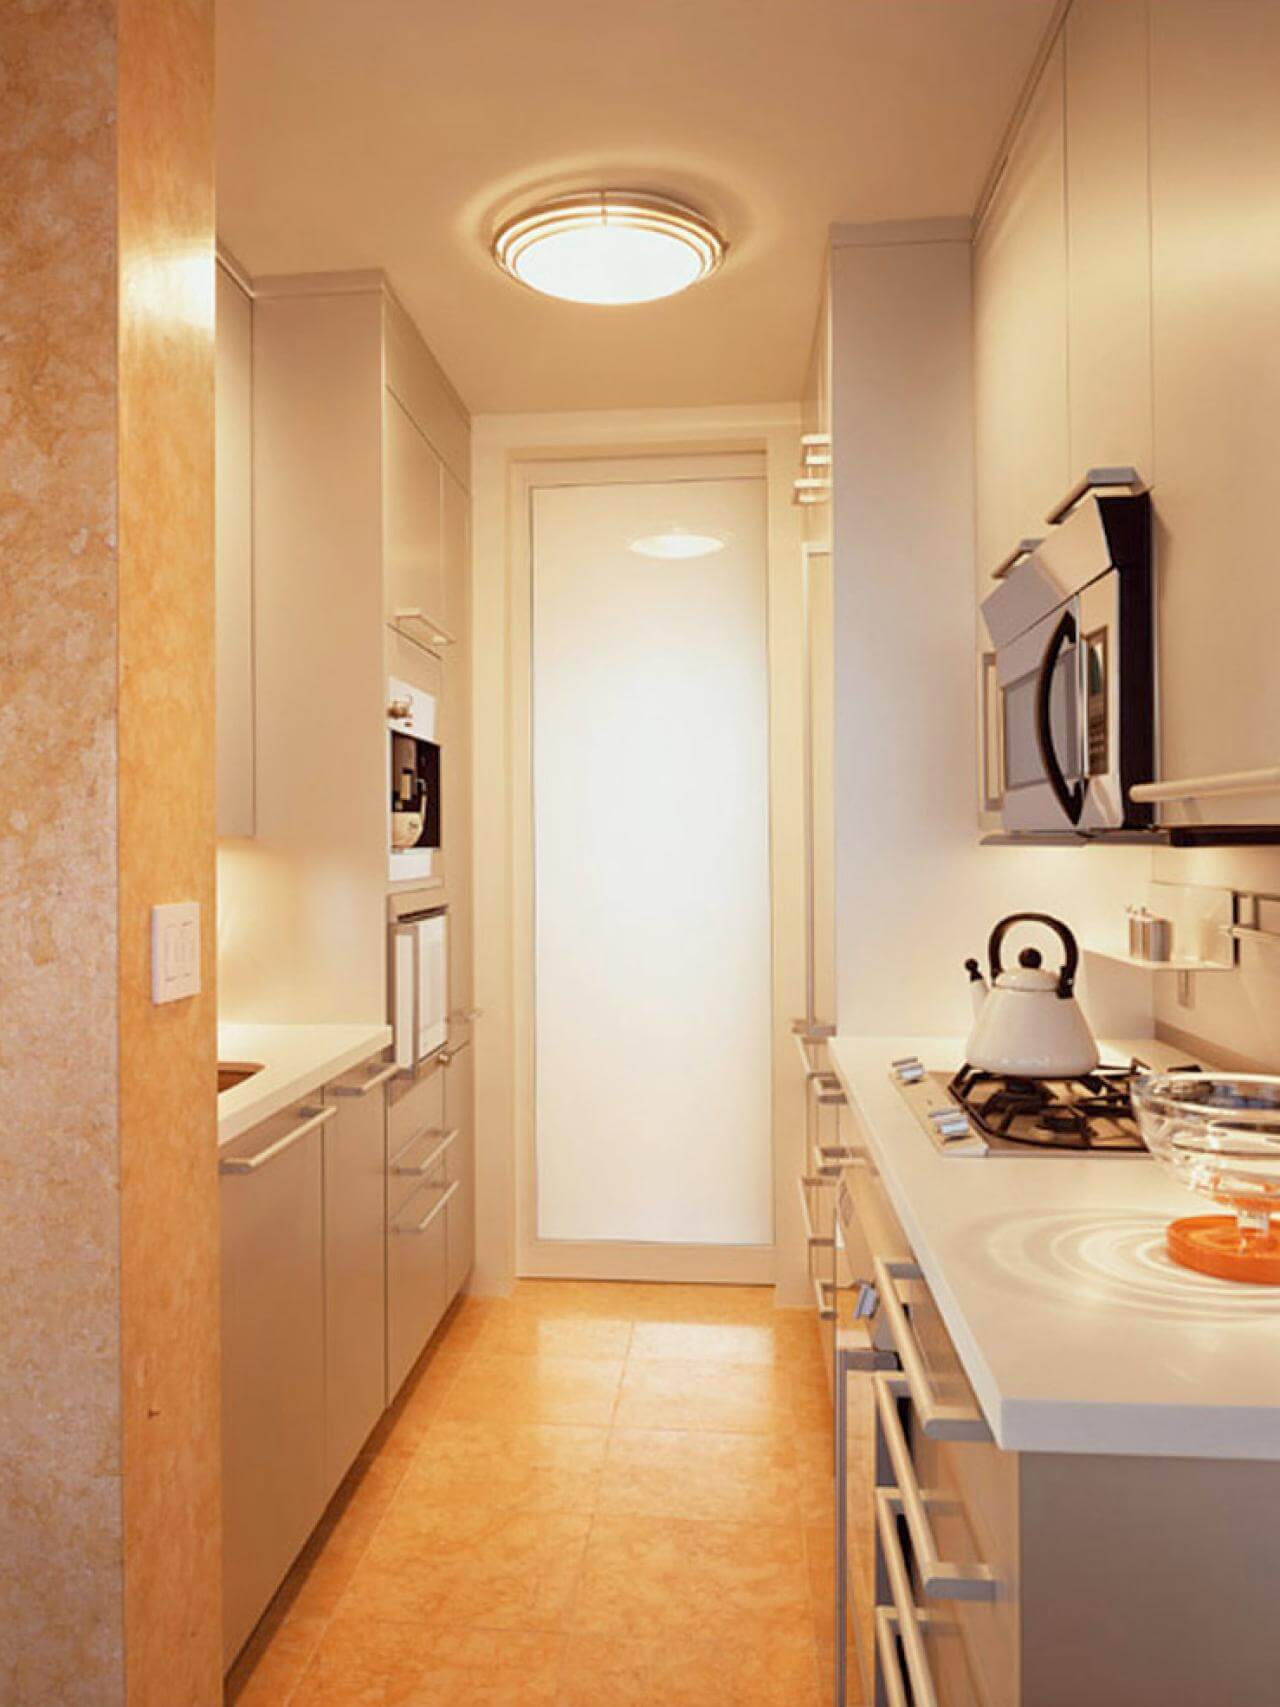 Efficient narrow kitchen